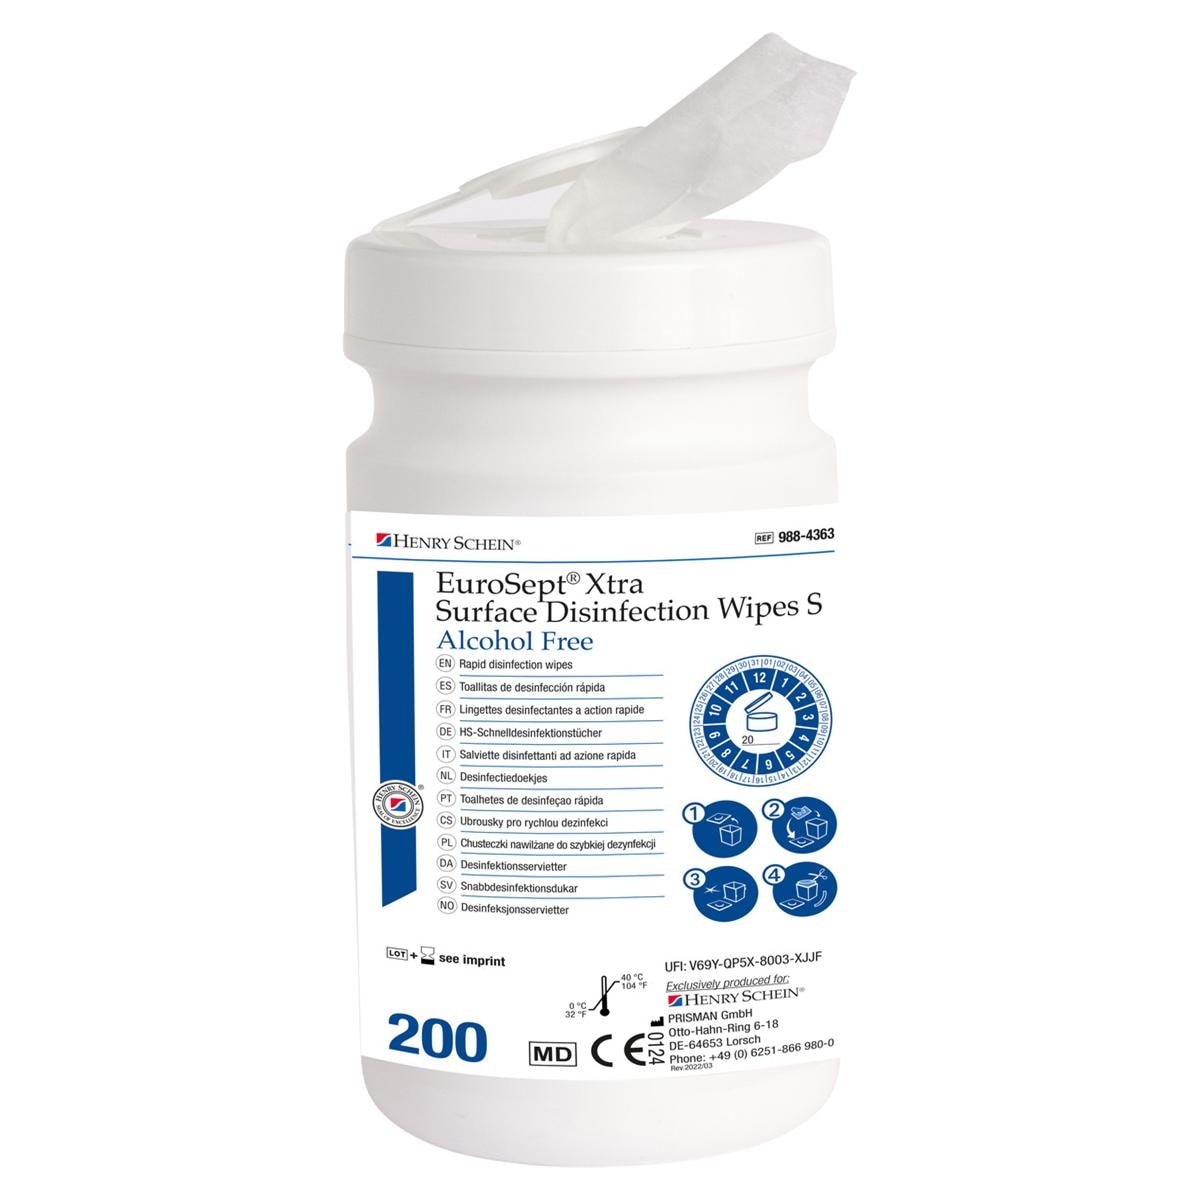 Eurosept Xtra Surface Disinfection Wipes Small - sans alcool - Distributeur de 200 lingettes (20 x 22 cm)